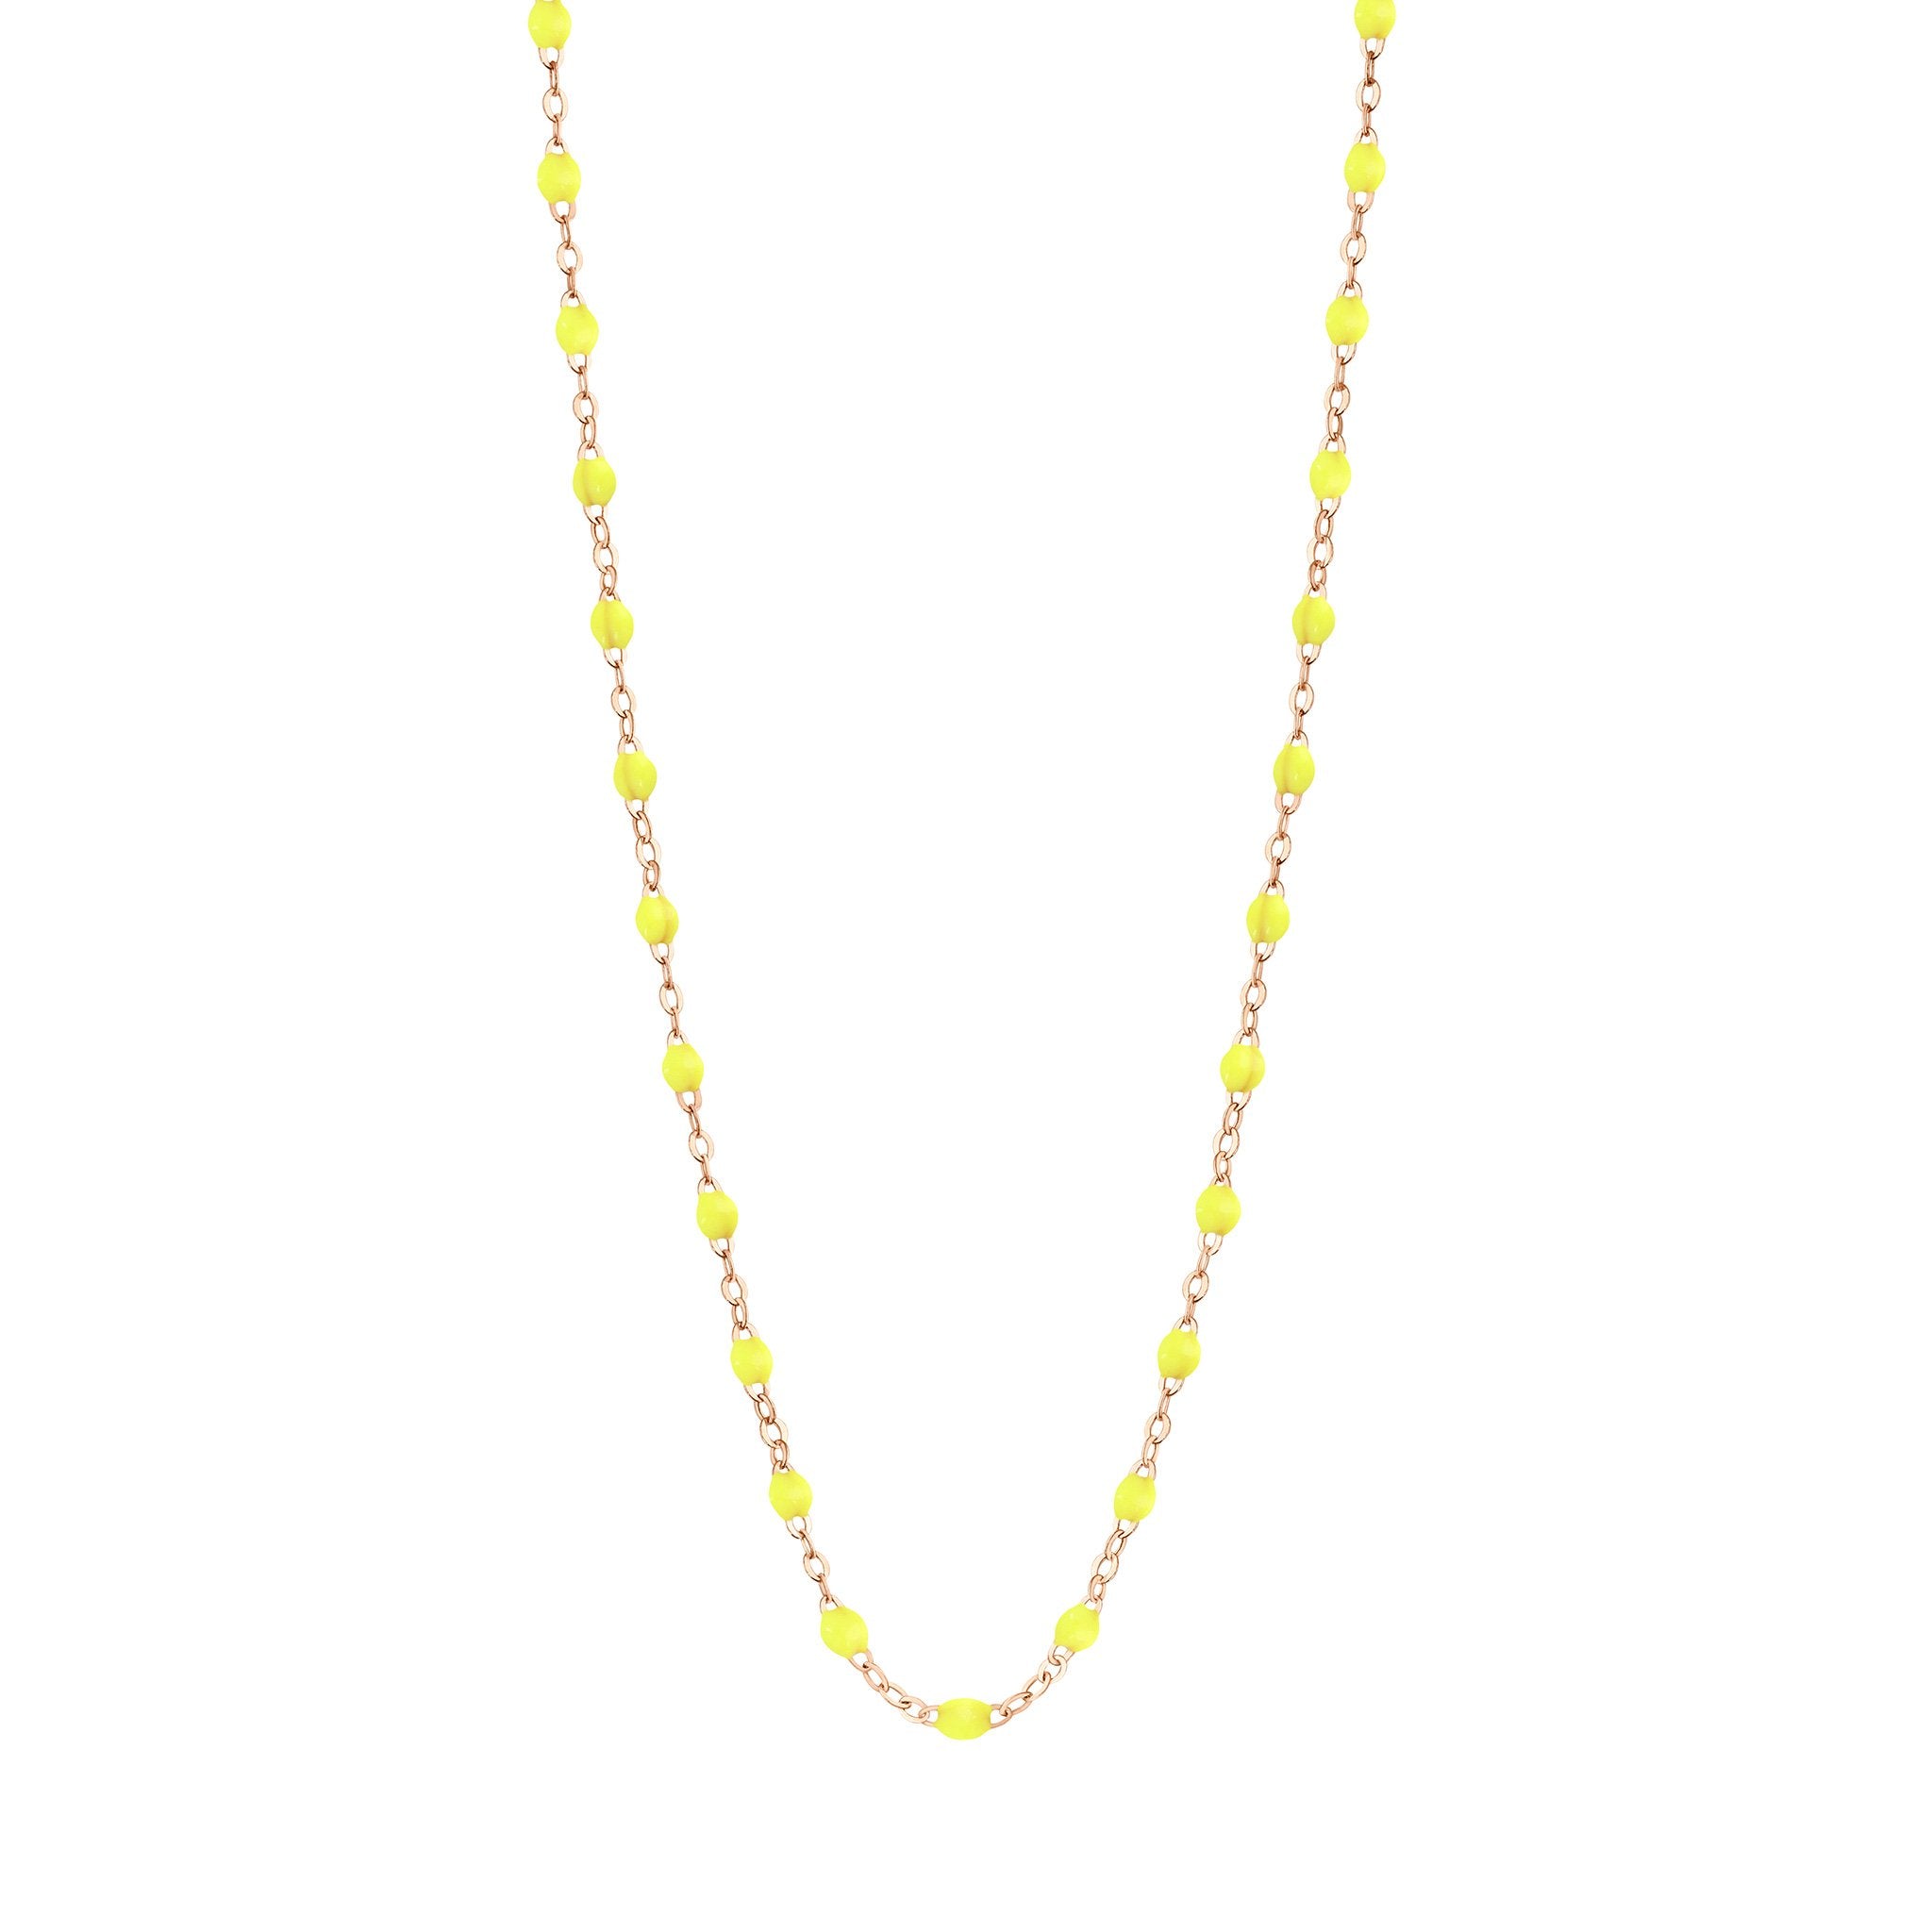 Collier jaune fluo Classique Gigi, or rose, 42 cm classique gigi Référence :  b1gi001r1842xx -1